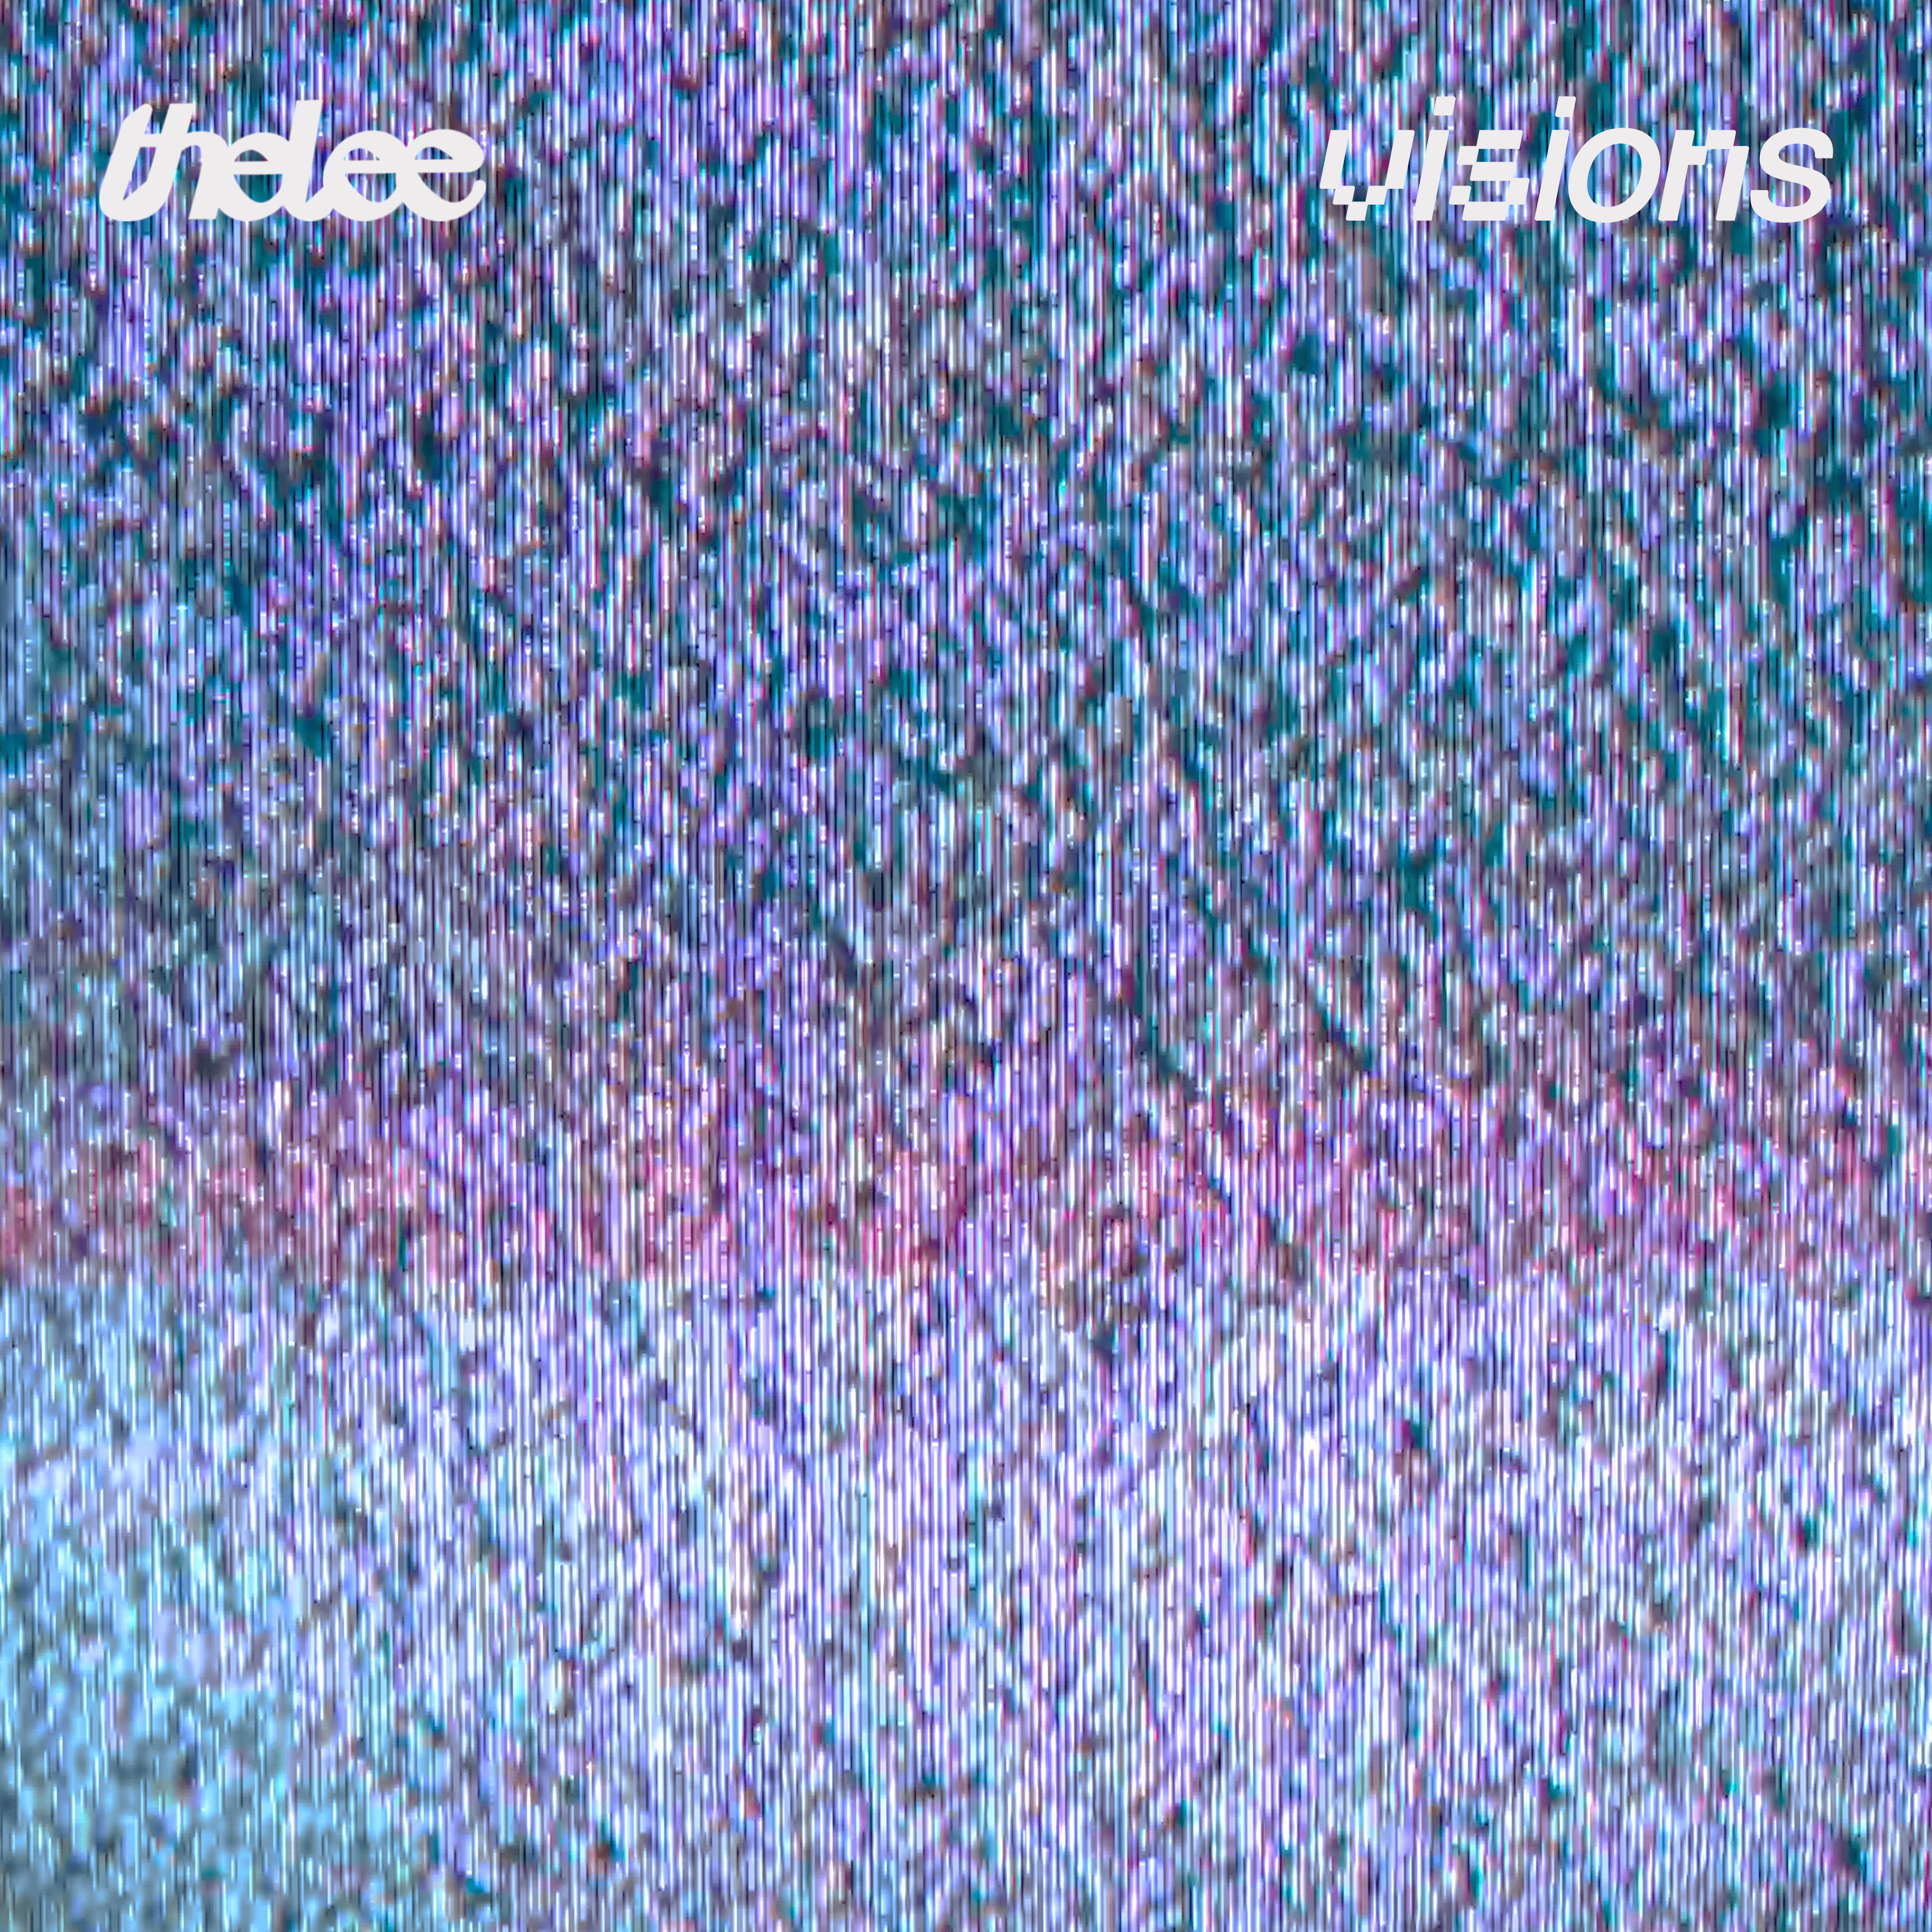 Thelee debuta con su primer EP llamado 'Visions'